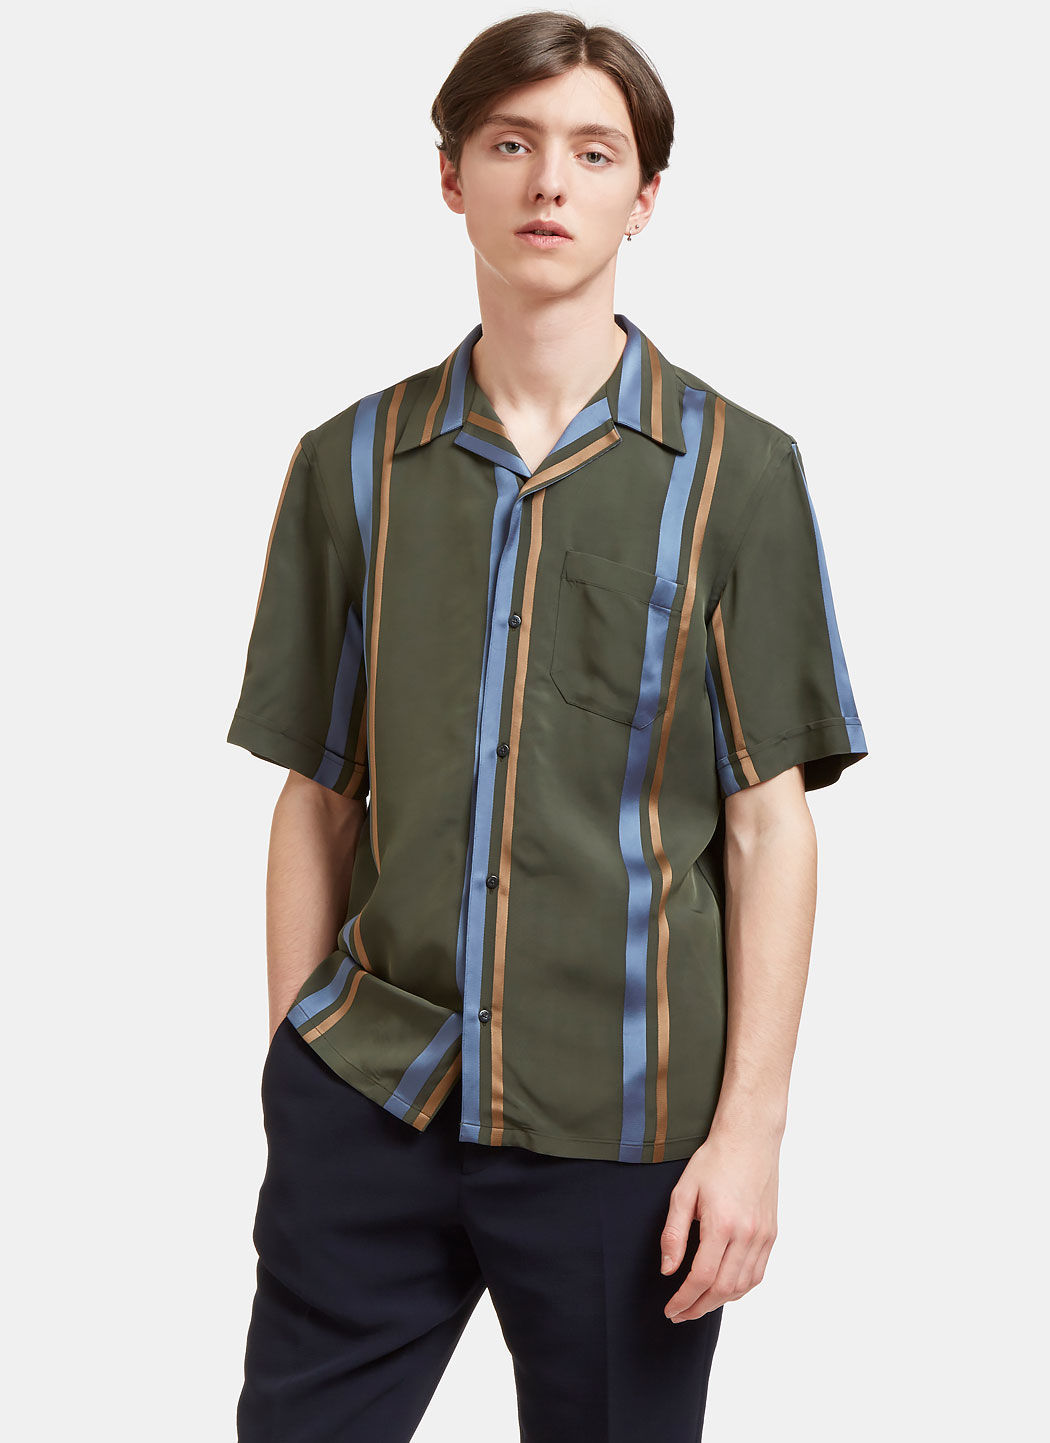 Fendi Men's Satin Striped Short Sleeved Shirt In Khaki | ModeSens